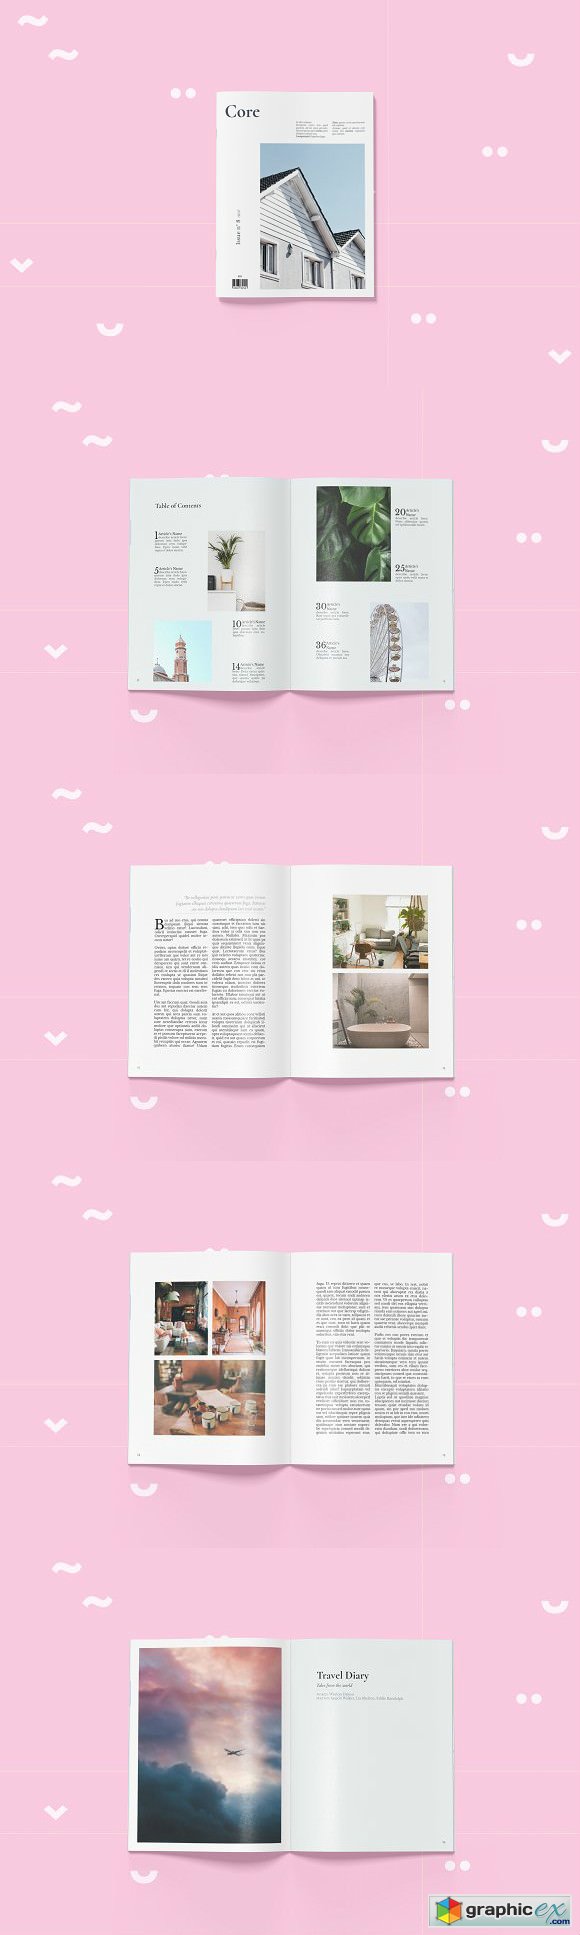 Core - Letter size Magazine Template